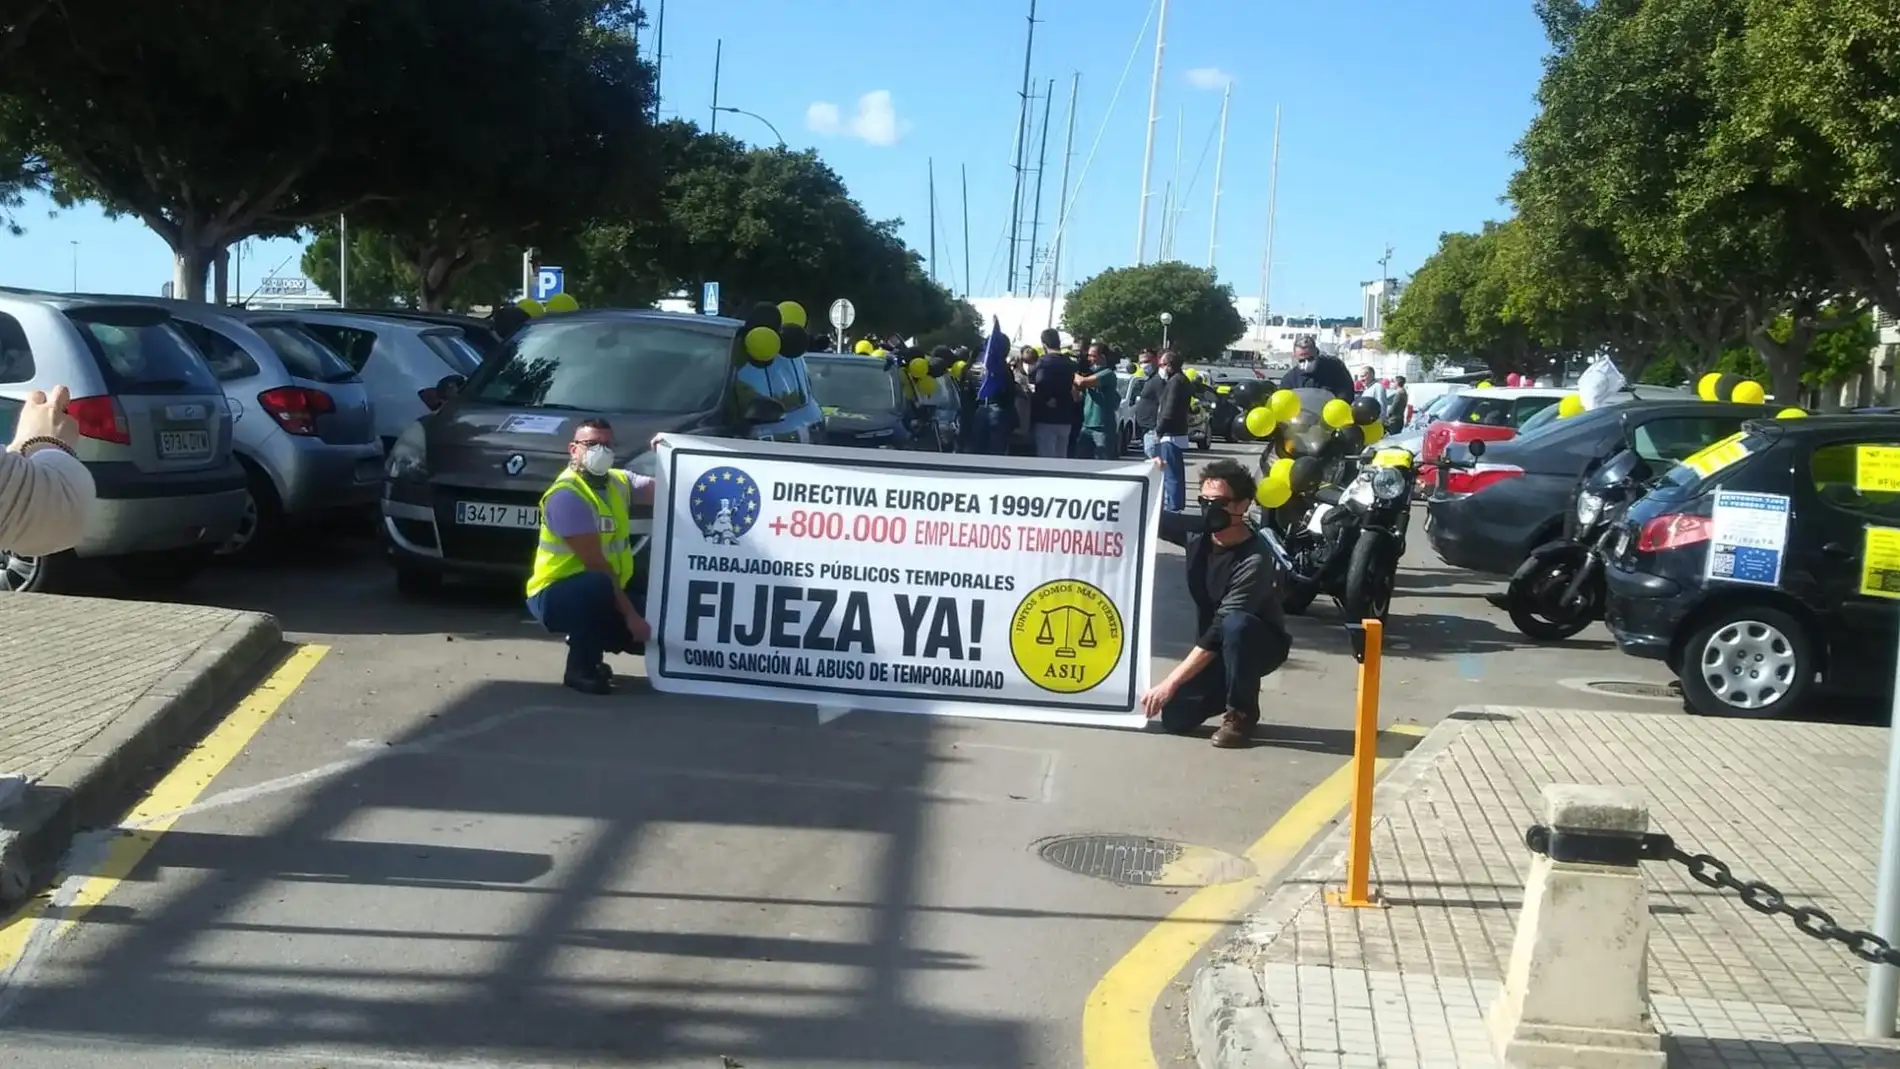 Unos 150 vehículos han participado este domingo en la caravana contra la "temporalidad abusiva" en Palma